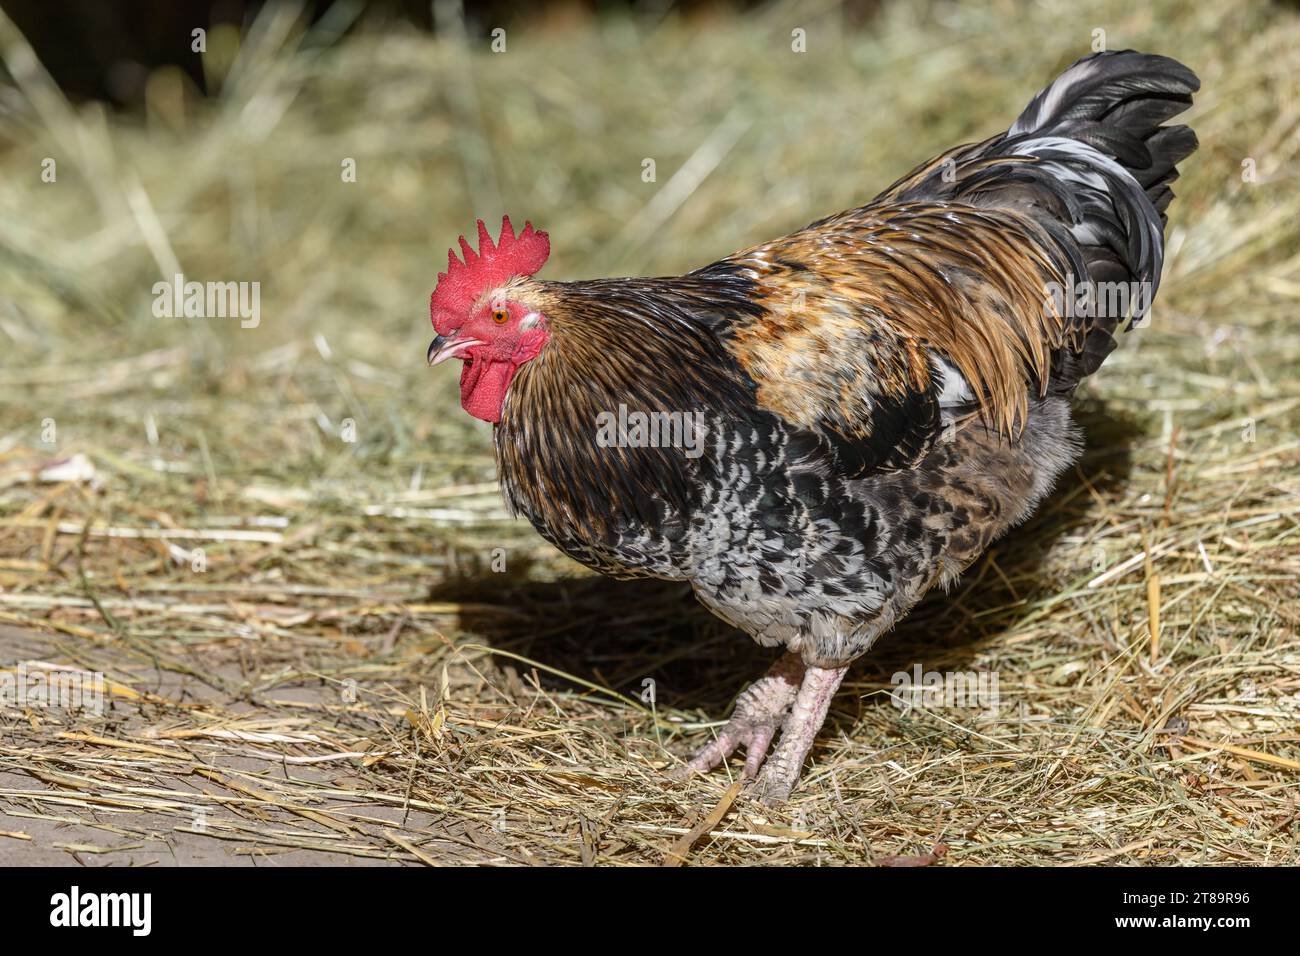 Coq de Barnyard en liberté avec plumage coloré, élevage en plein air. Bas-Rhin, Collectivite européenne d'Alsace,Grand est, France, Europe. Banque D'Images